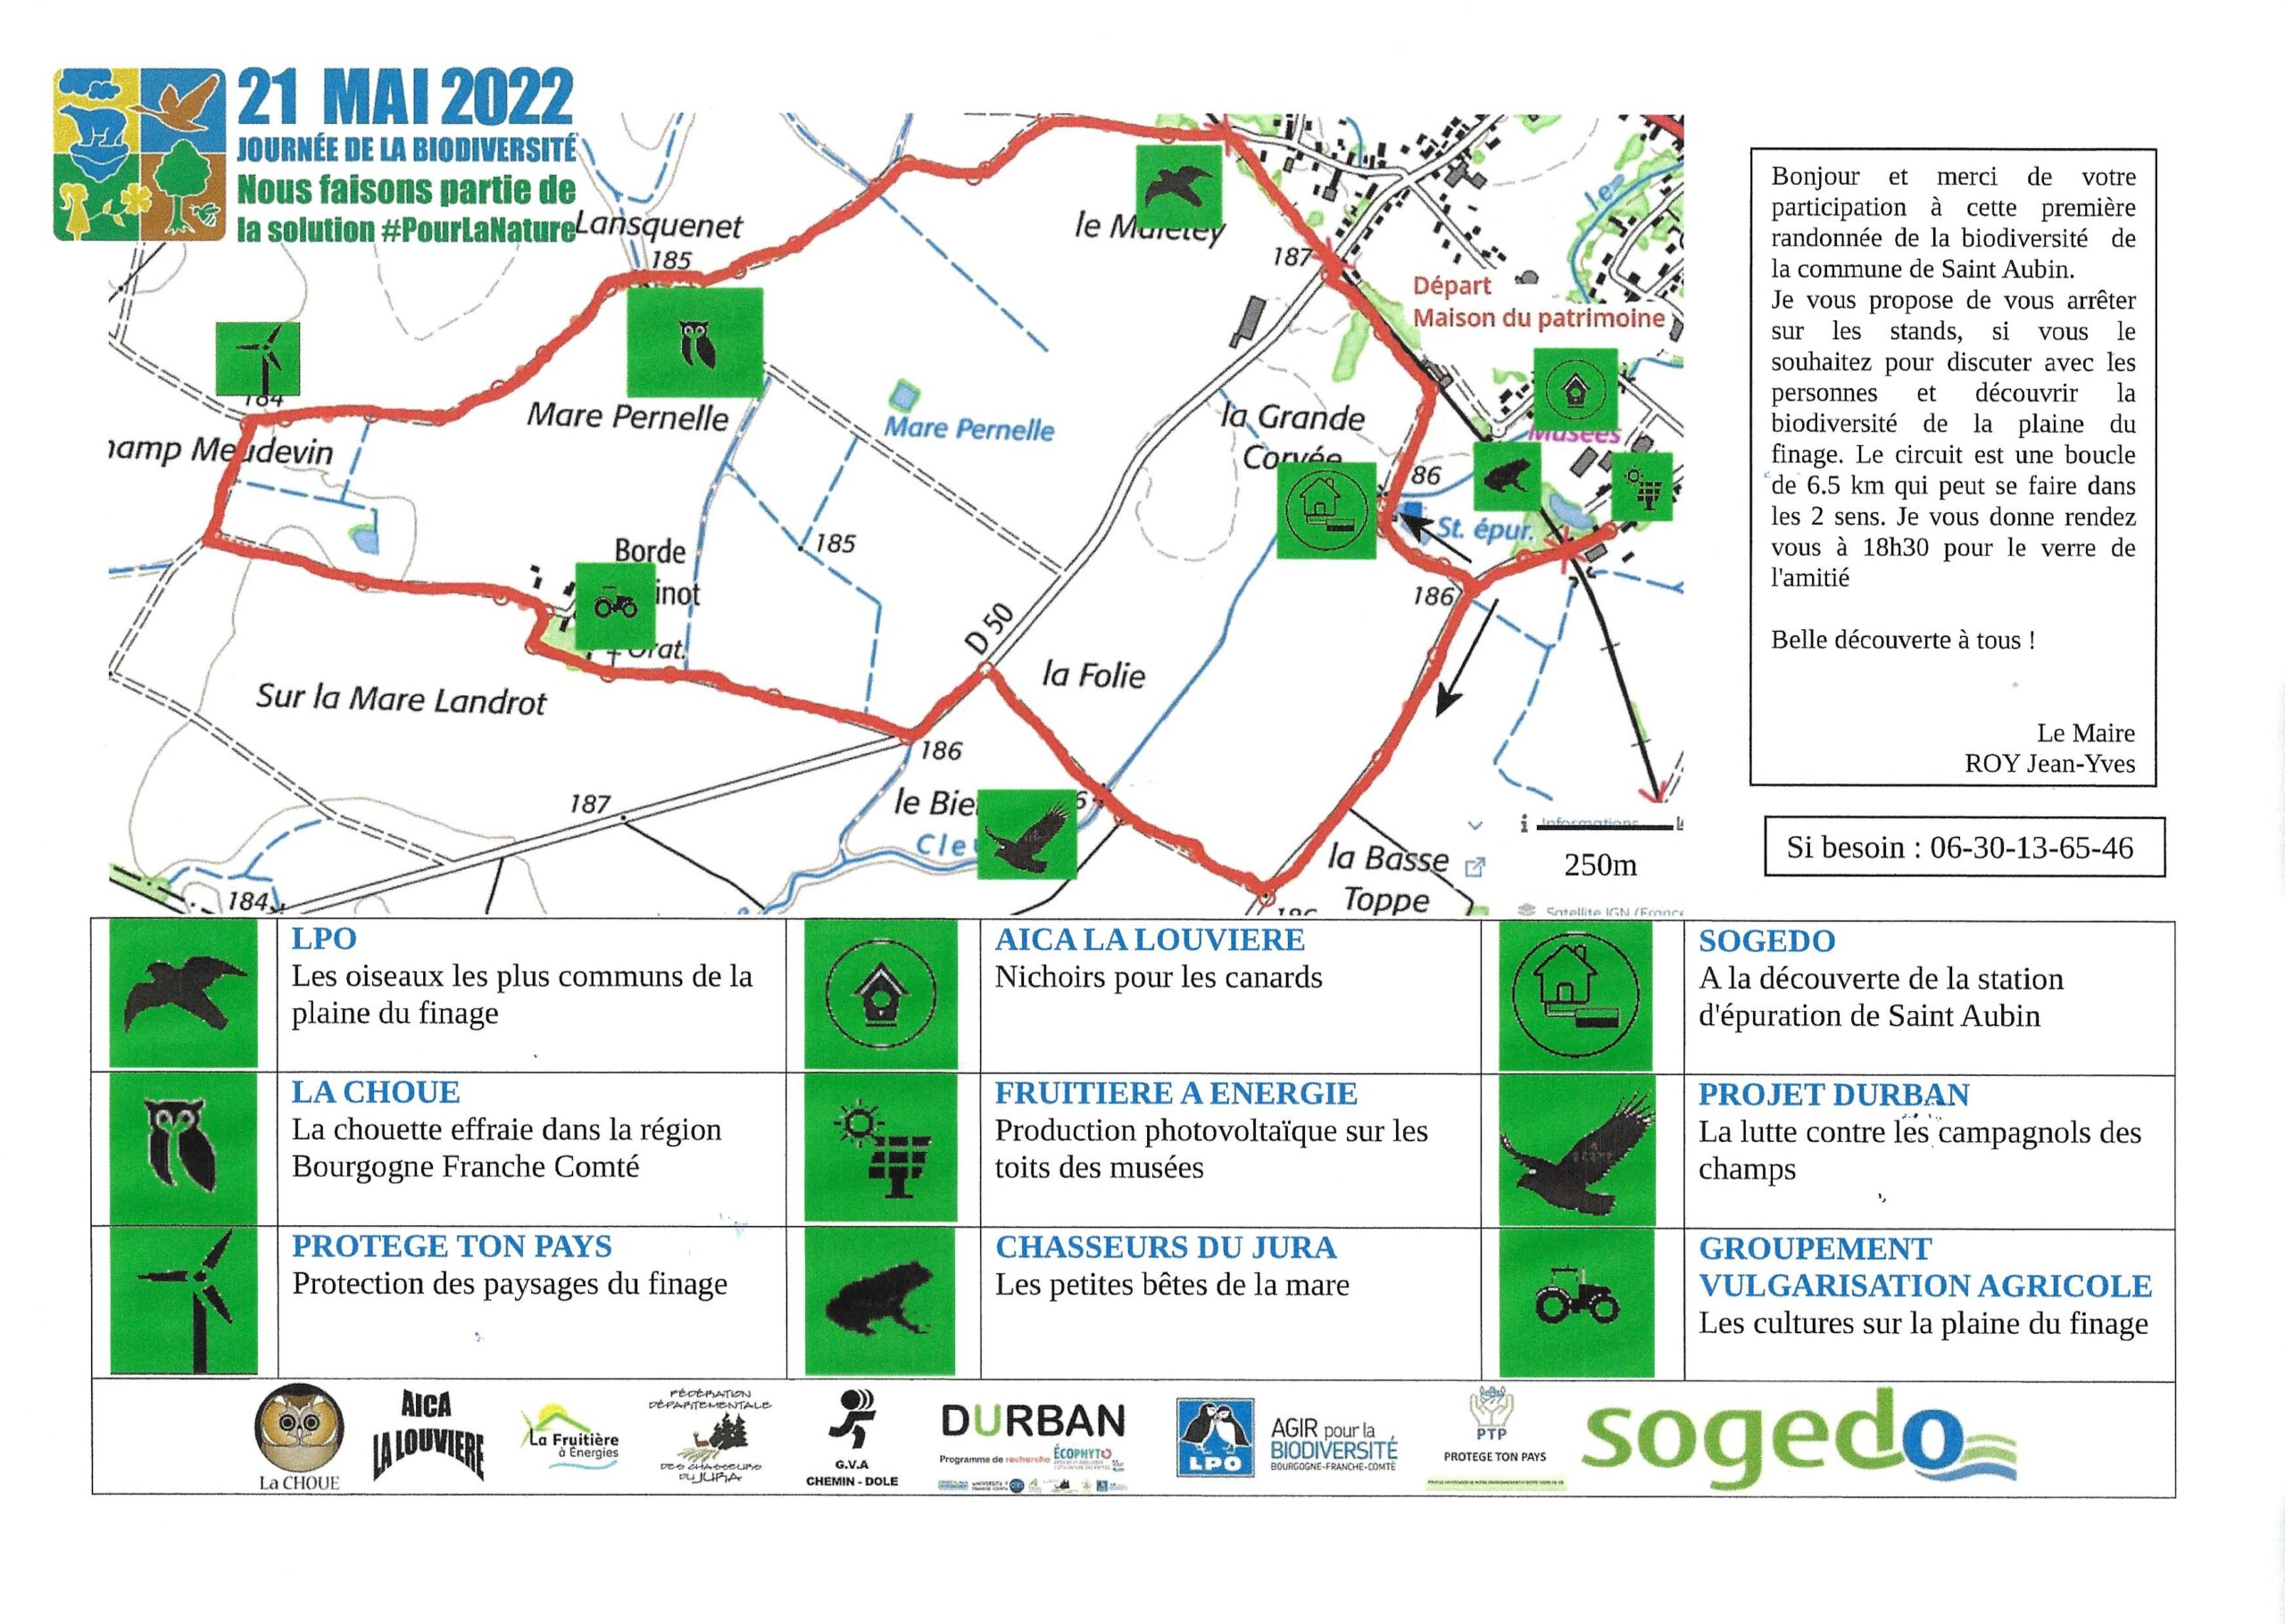 Saint-Aubin (Jura) : toutes les précisions sur la journée de la biodiversité du samedi 21 mai 2022